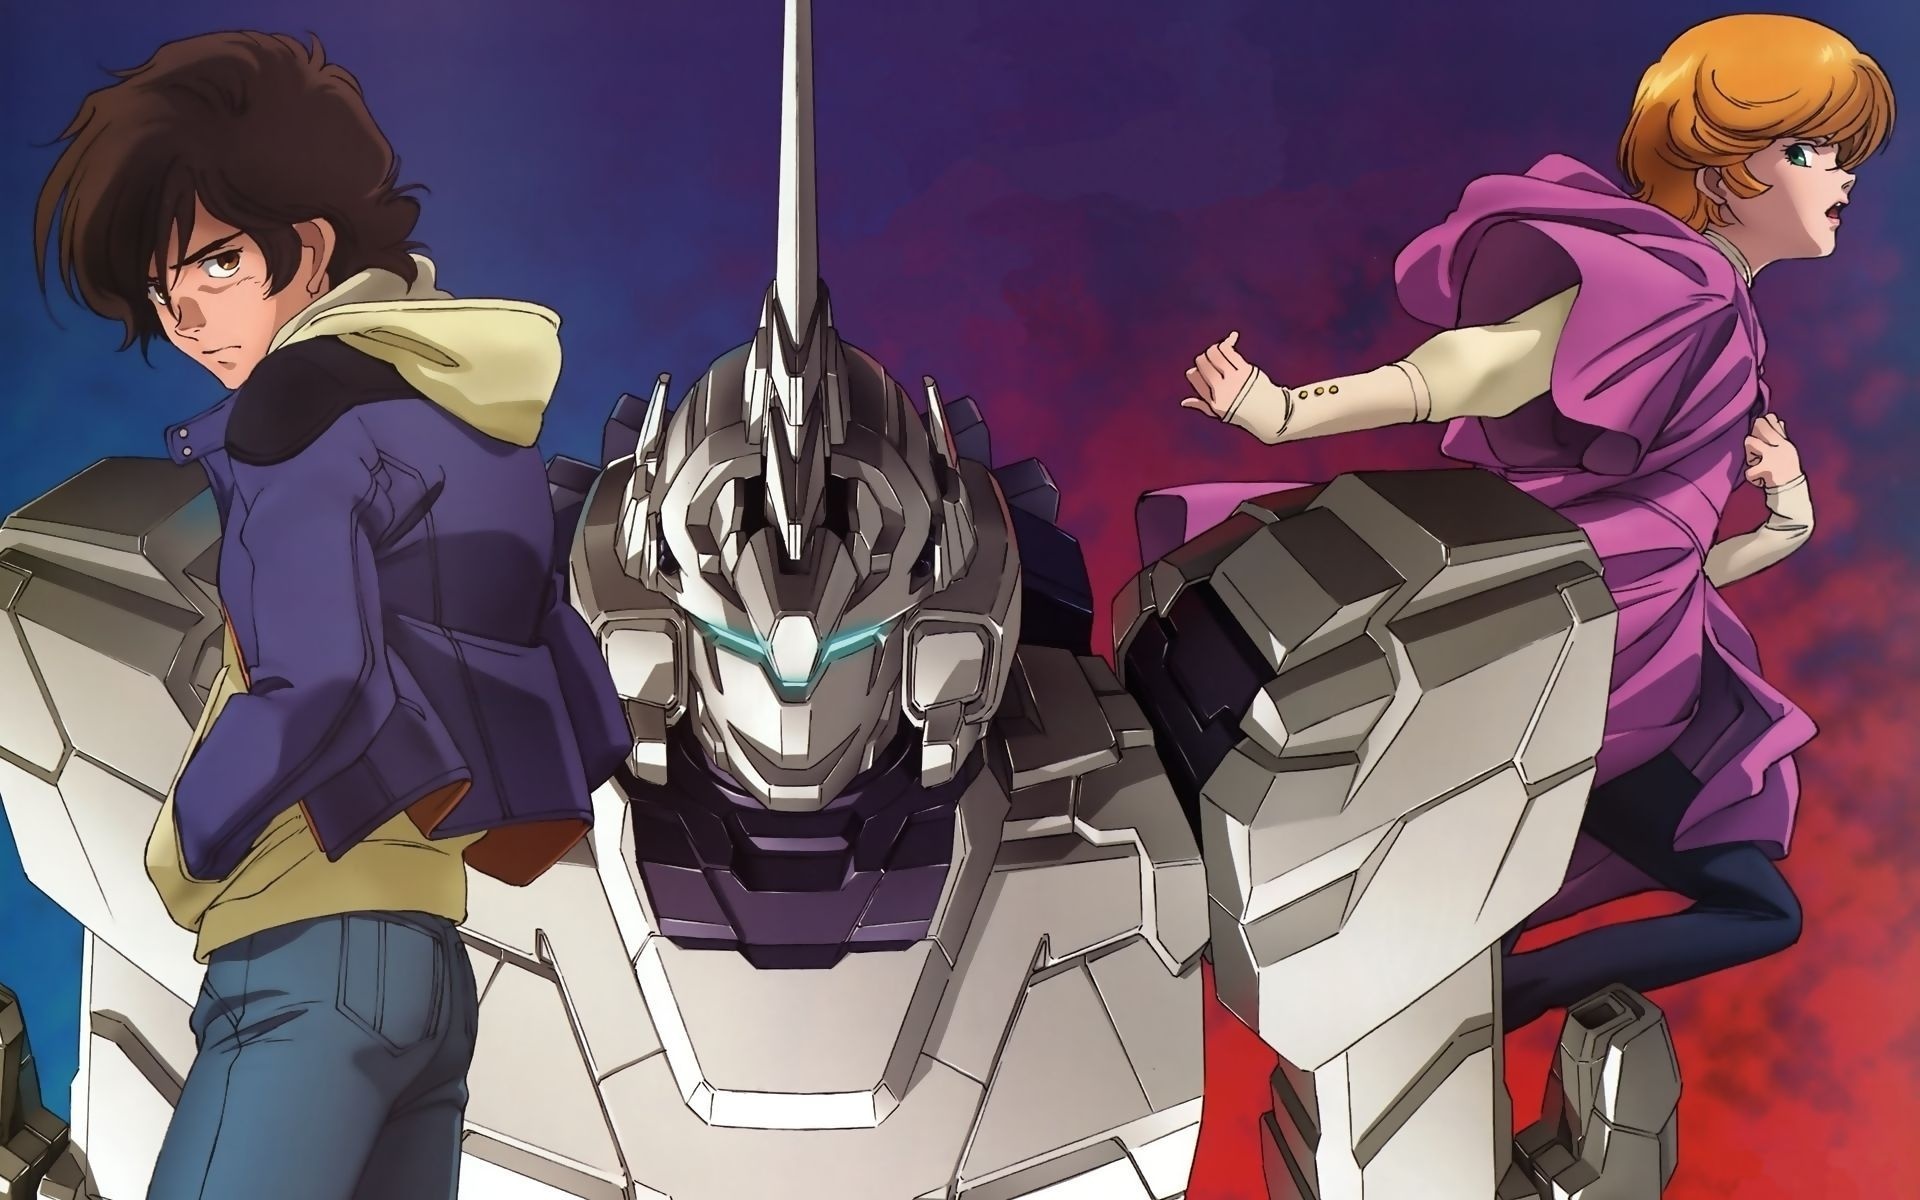 Mobile Suit Gundam/#291977 | Fullsize Image 1920x1200